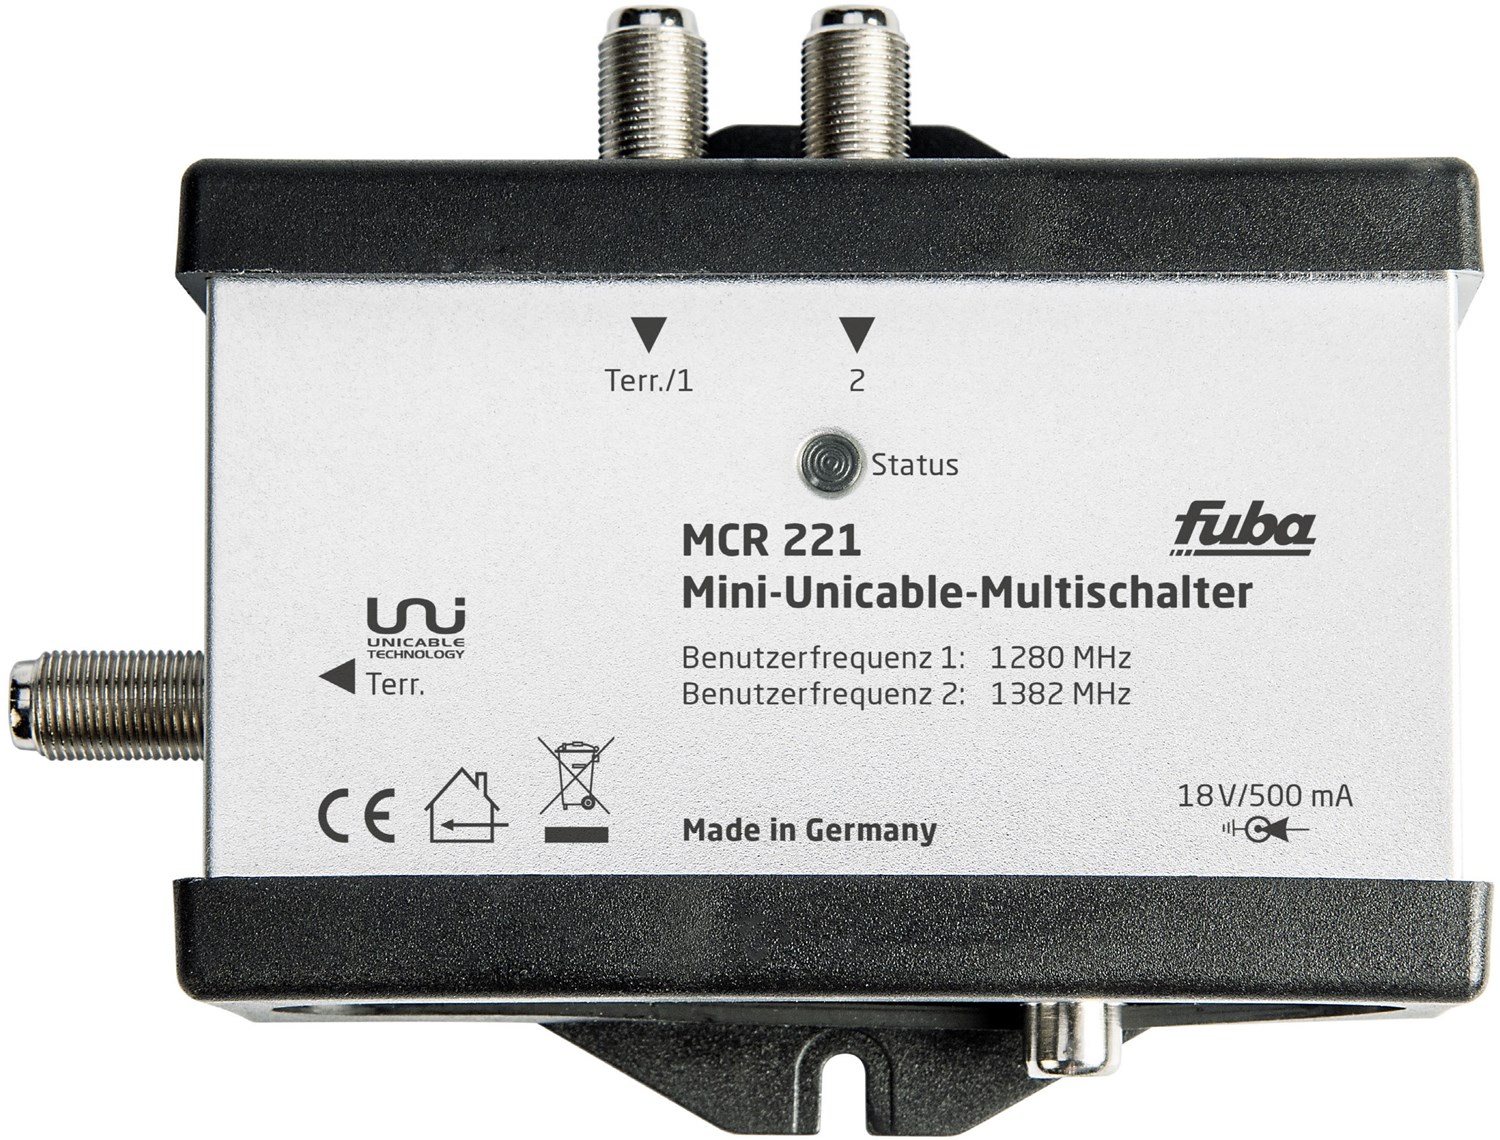 MCR 221 Mini-Einkabel-Multischalter